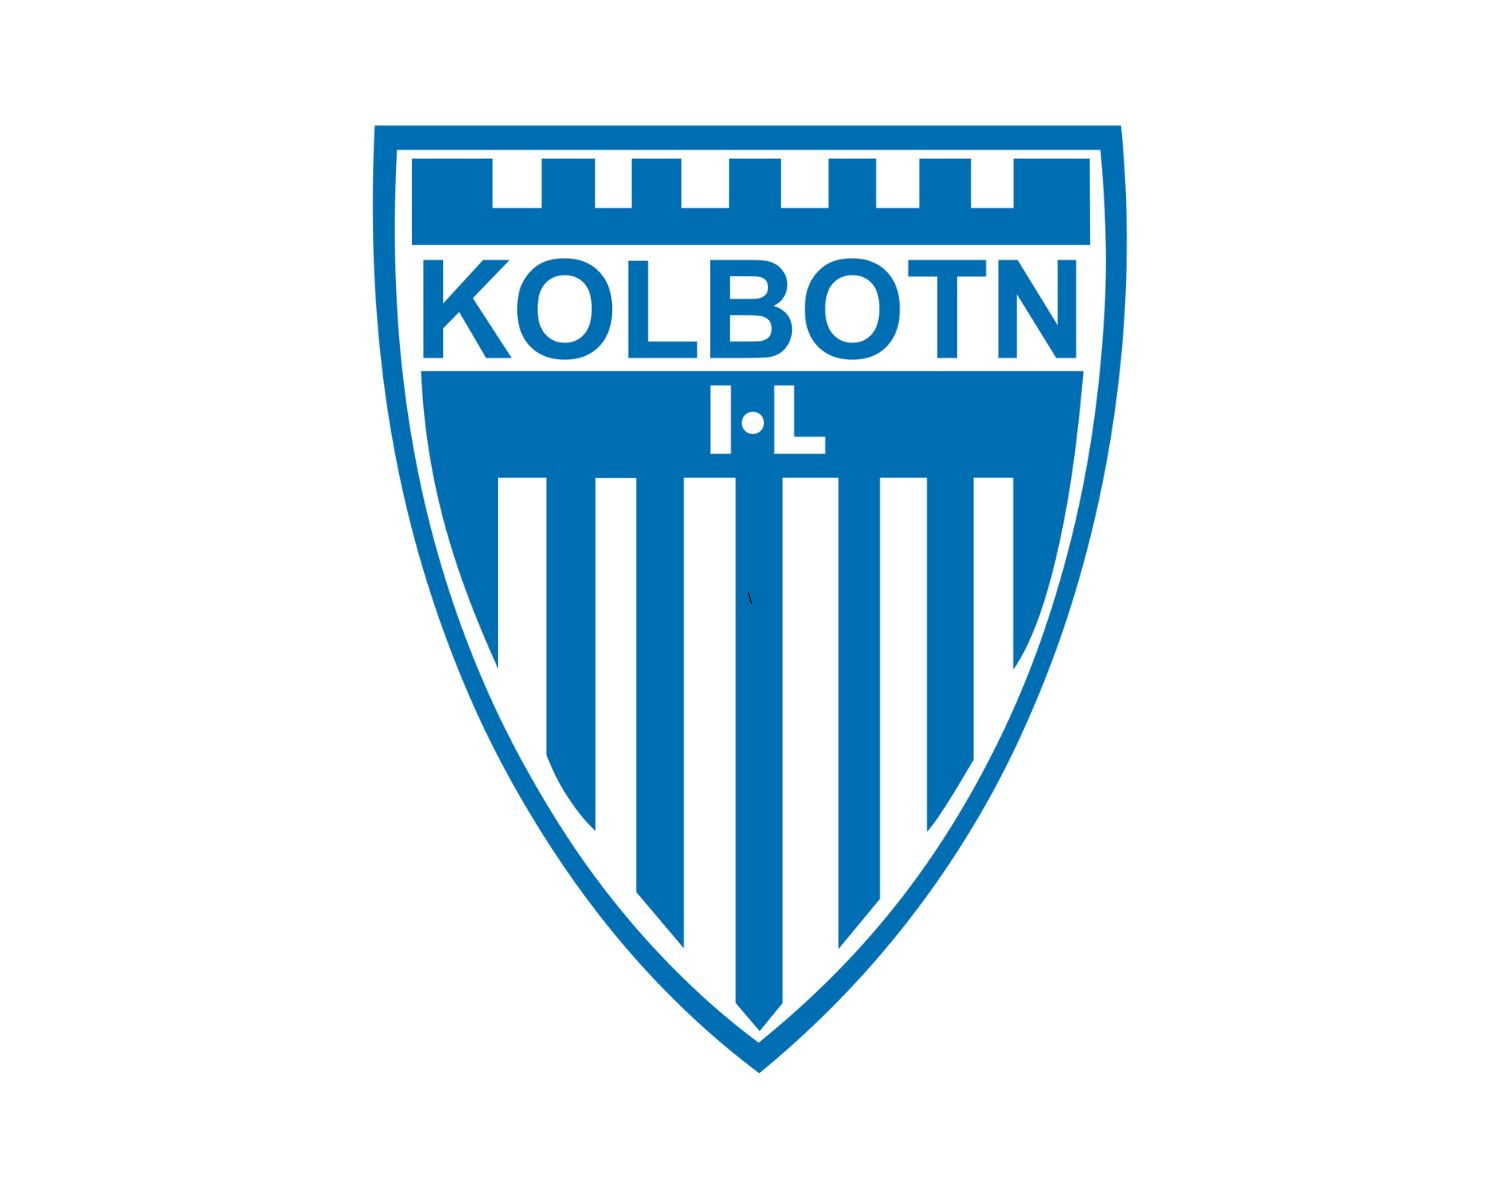 kolbotn-il-17-football-club-facts